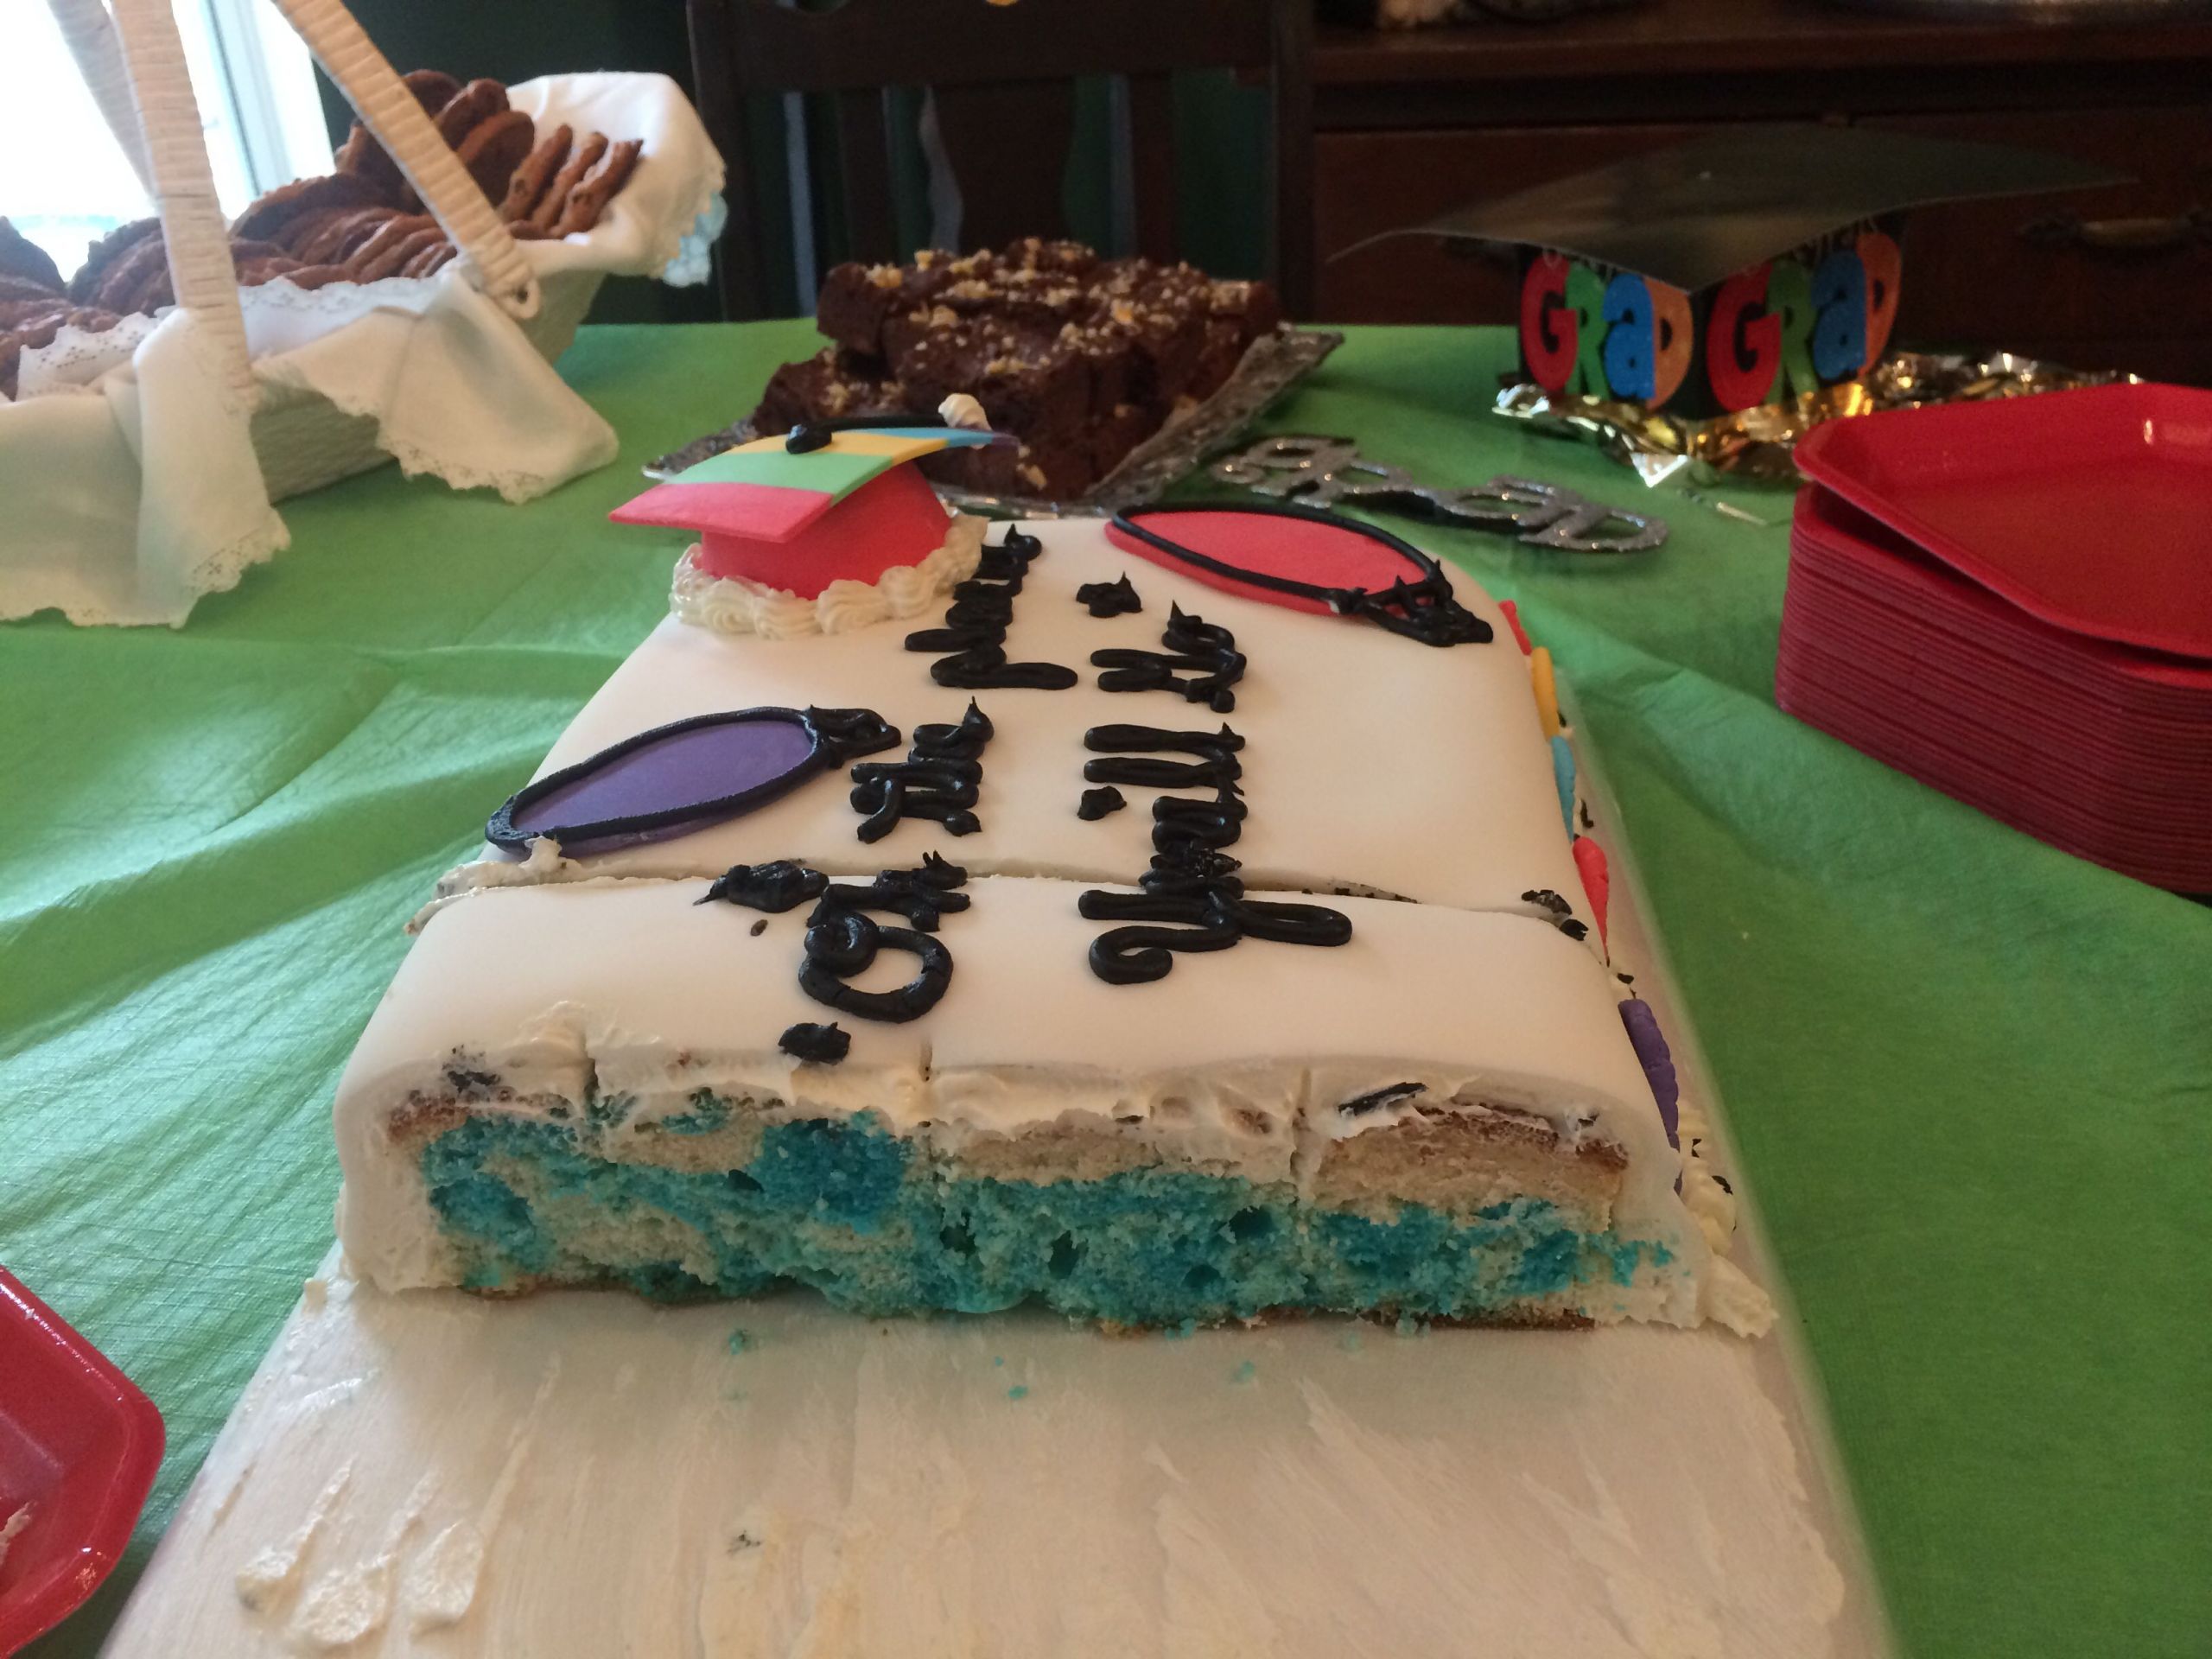 Surprise Graduation Party Ideas
 Dr Seuss graduation cake with surprise inside